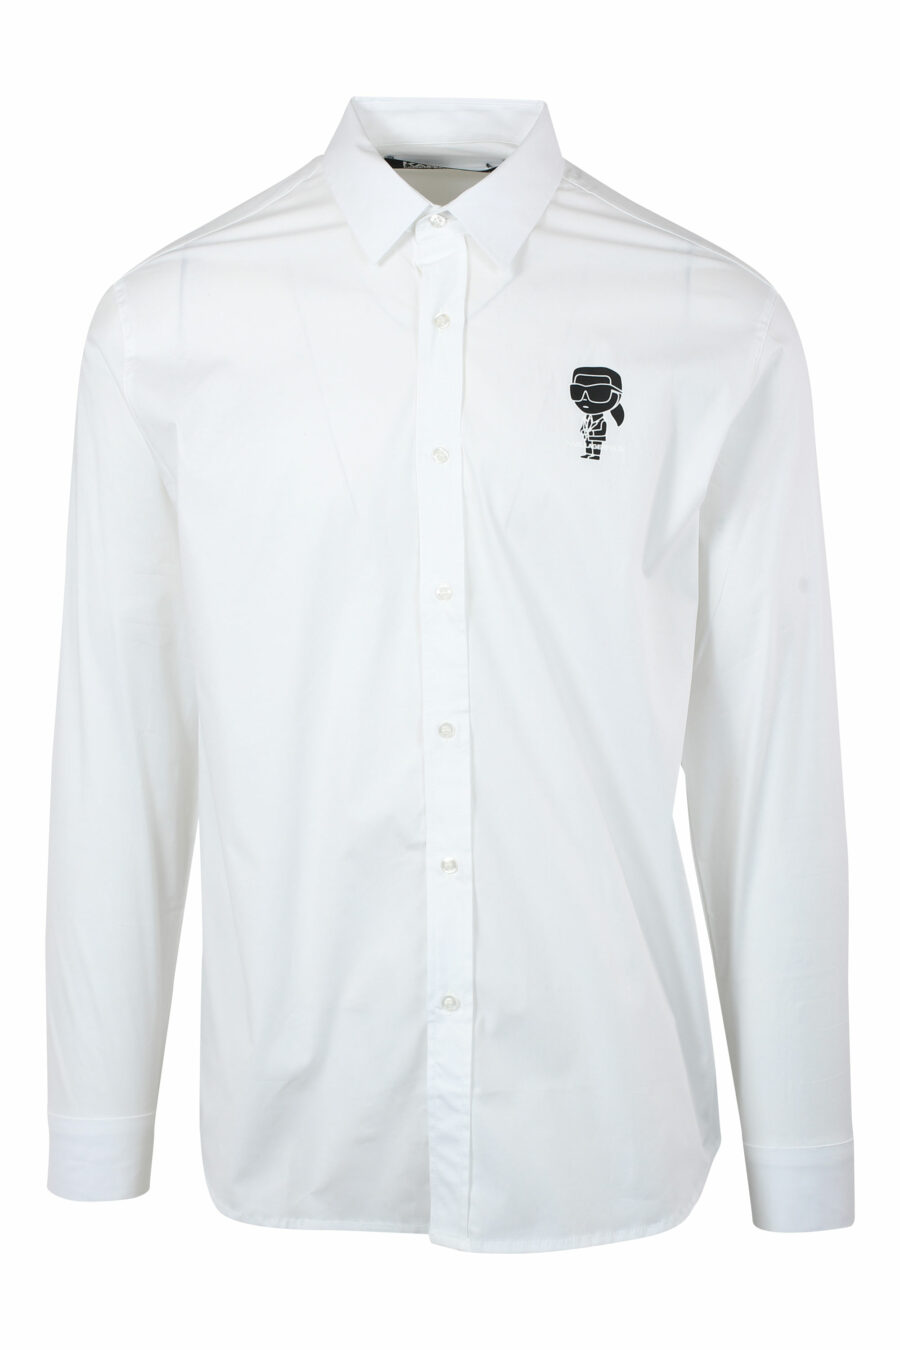 Weißes Hemd mit Minilogo "karl" in schwarzer Silhouette - IMG 9681